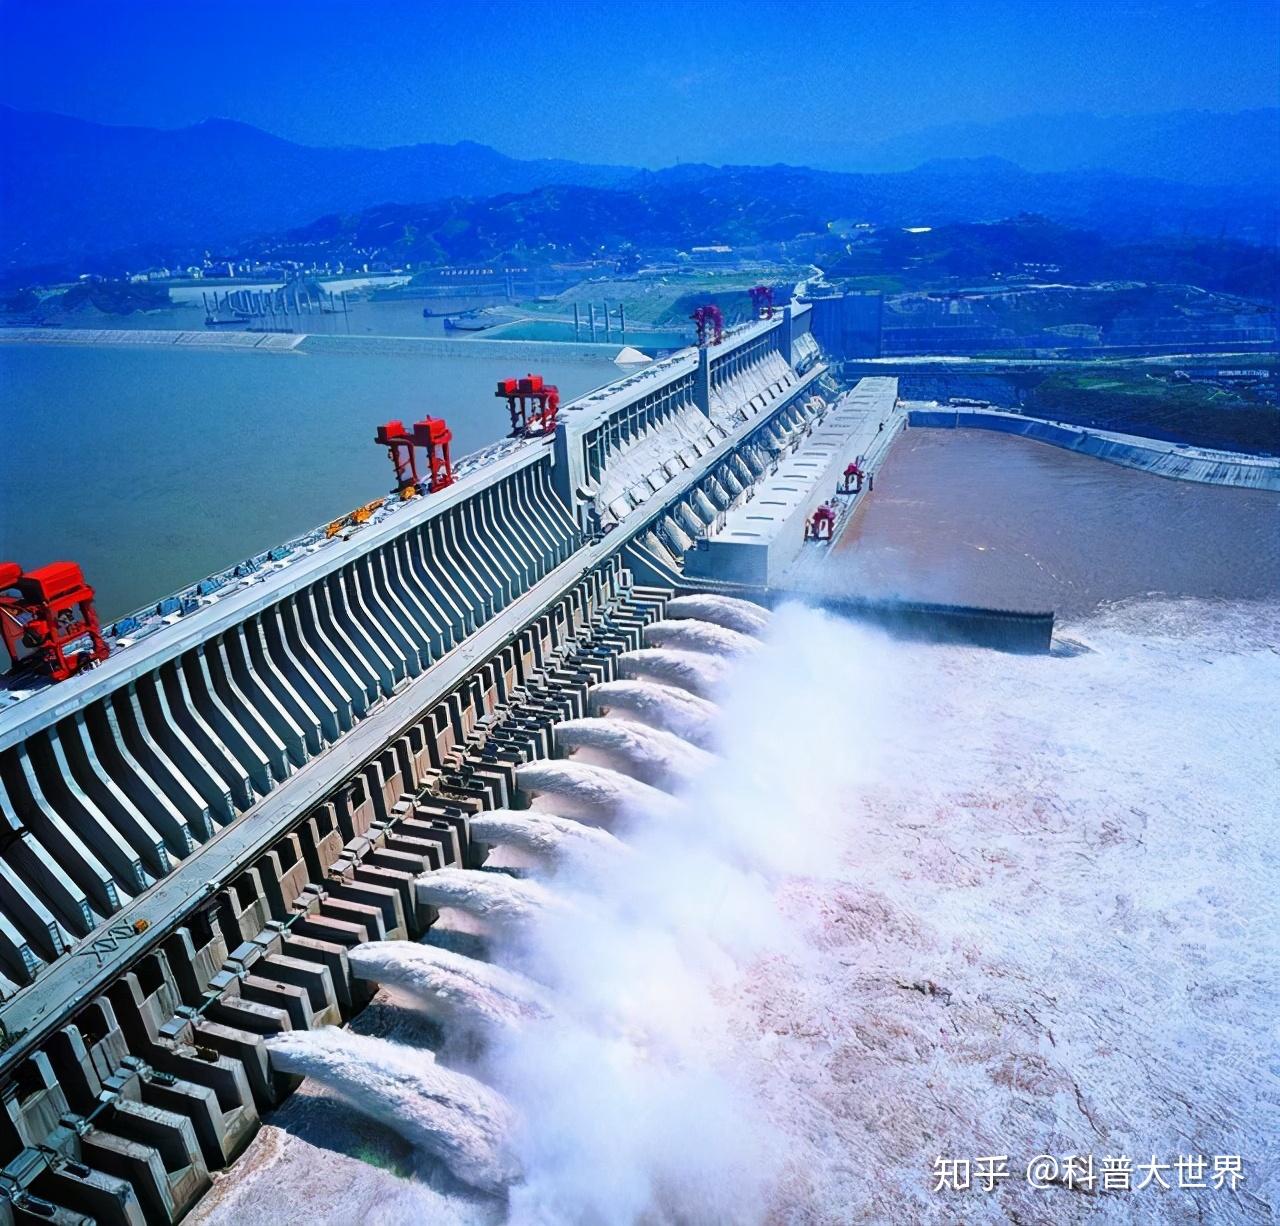 随着太阳能和风能的兴起 中国大型水坝时代即将结束 - 知乎